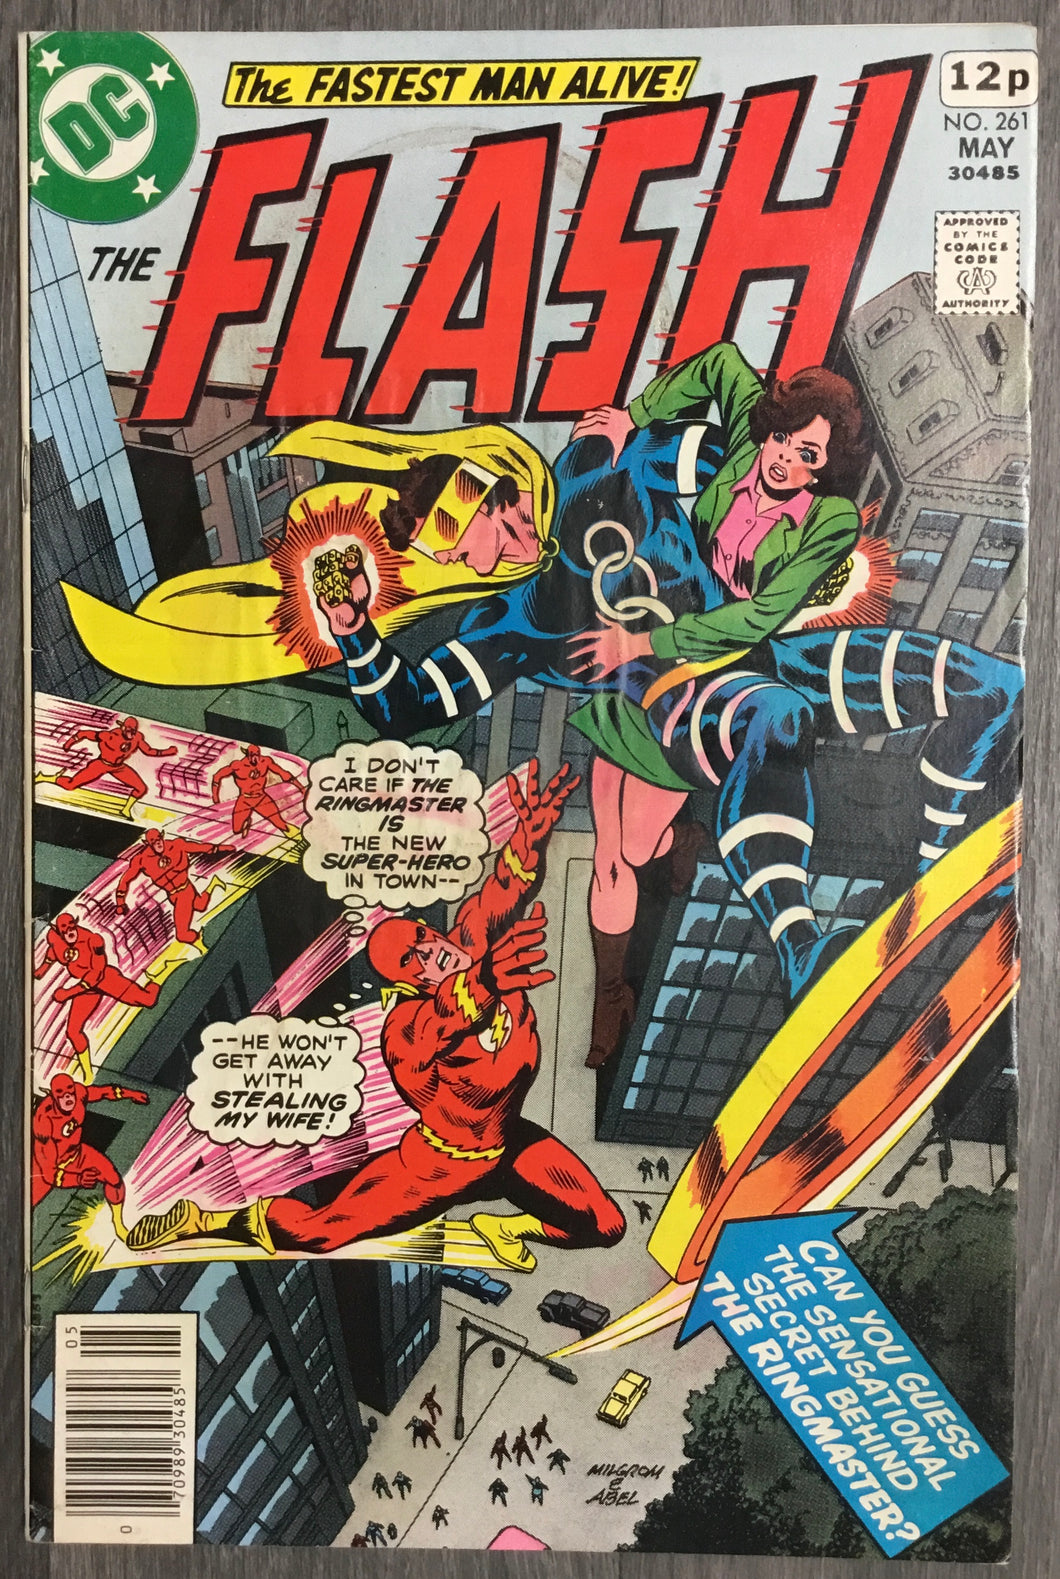 The Flash No. #261 1978 DC Comics